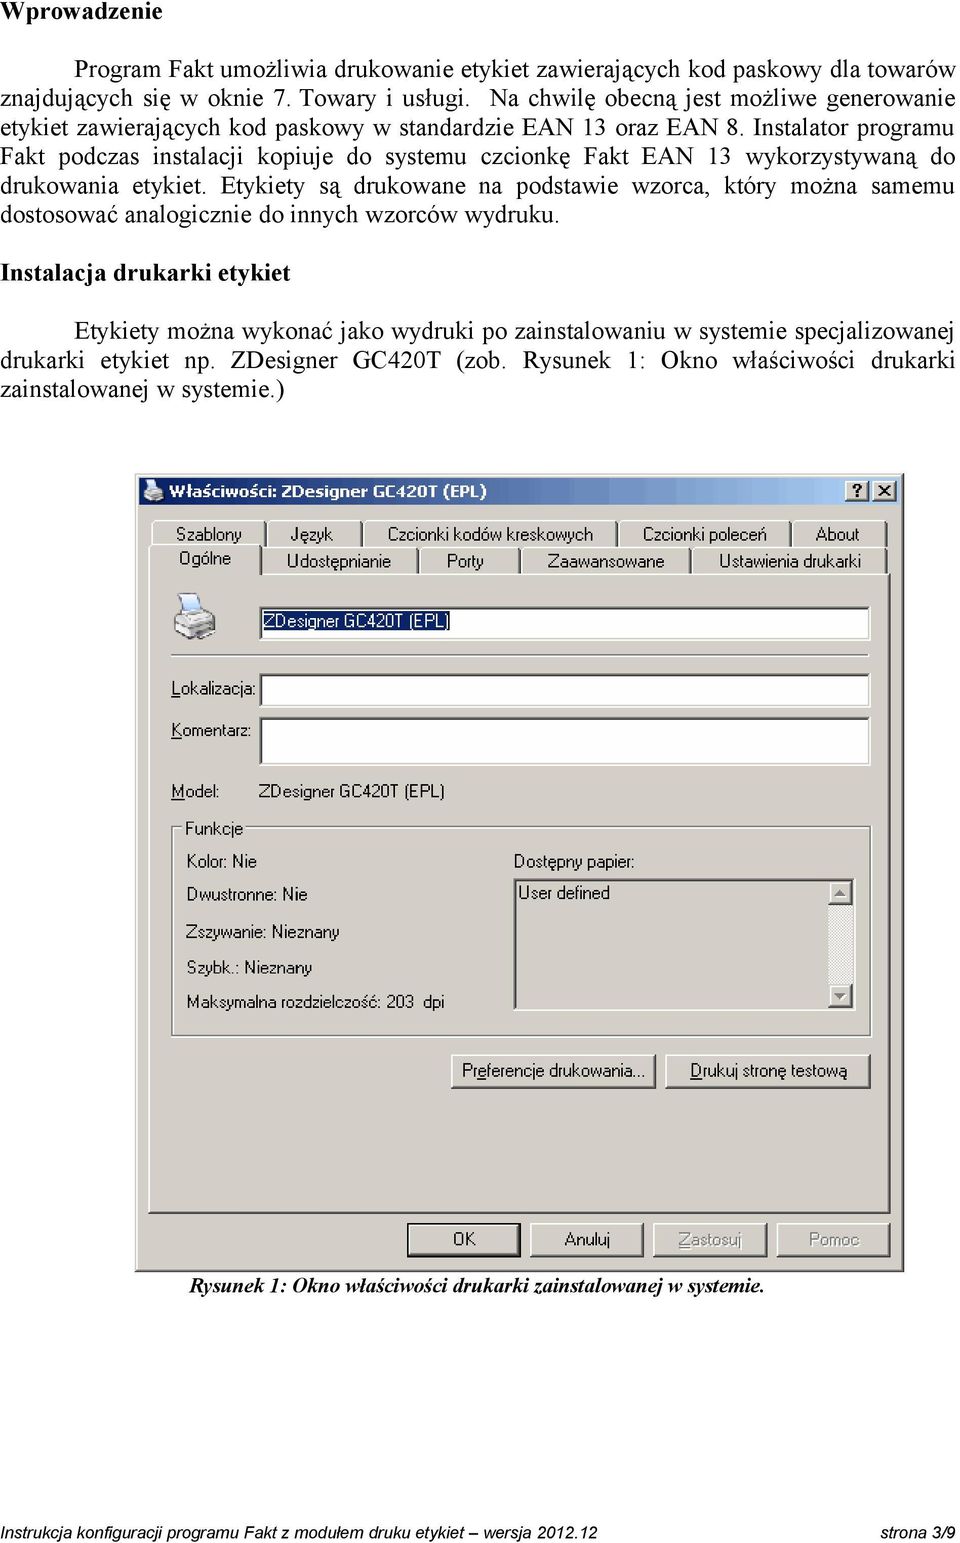 Instalator programu Fakt podczas instalacji kopiuje do systemu czcionkę Fakt EAN 13 wykorzystywaną do drukowania etykiet.